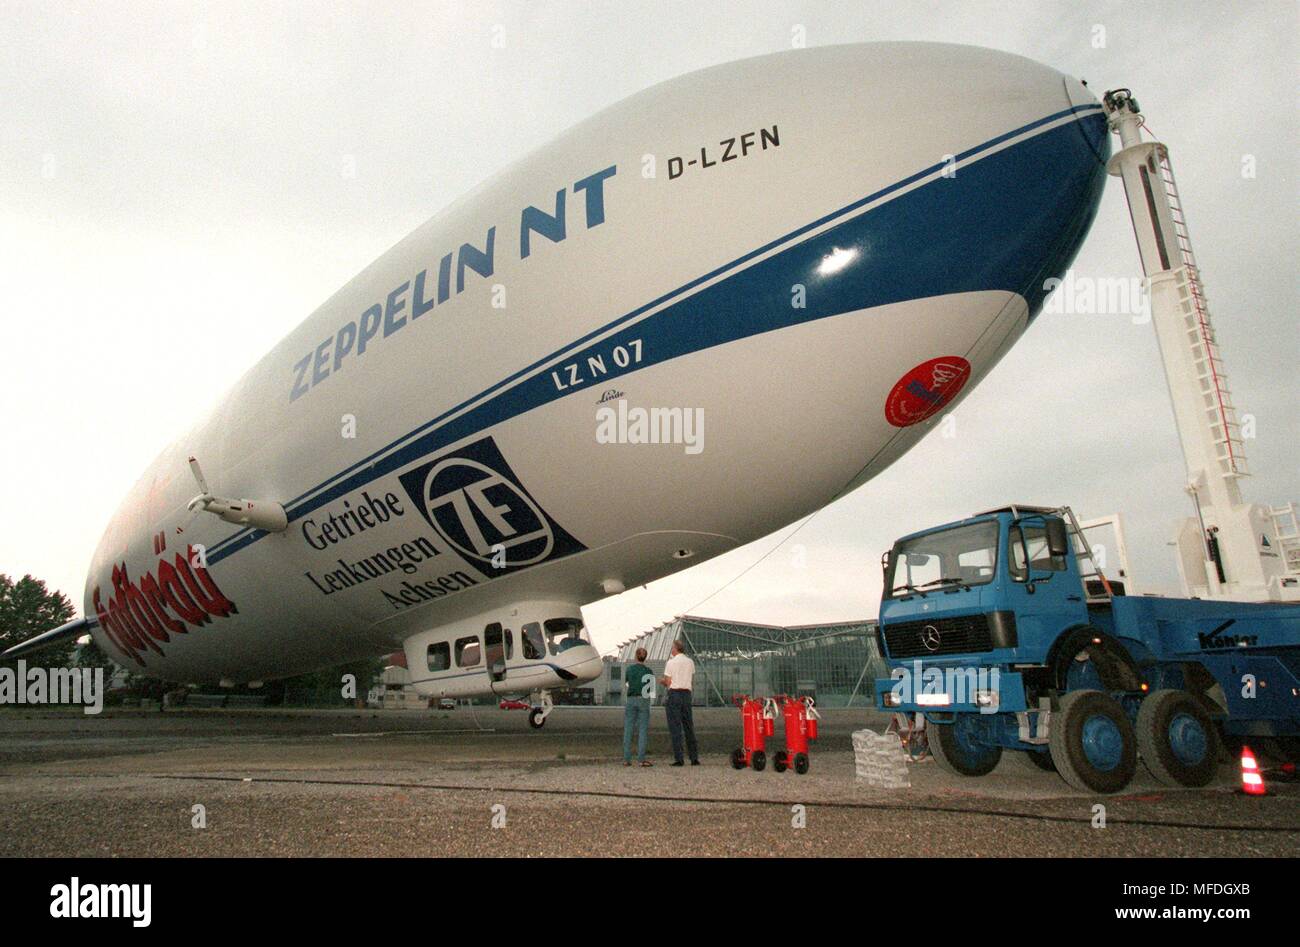 "Roll-out" der neue Zeppelin in Friedrichshafen: Nachdem es aus dem Hangar gezogen wurde und befestigt, um einen Anker Mast, der 75 Meter langen Zeppelin NT (Neue Technologie) schwimmt auf 8.8.1997 auf dem Gelände der Messe in Friedrichshafen. Der erste Flug der High-tech-Zeppelin ist für Ende August und Mitte September geplant. Passagiere - maximal zwölf - erwartet, eine Fahrt mit dem Luftschiff im Sommer 1988 zu genießen. 7200 Kubikmeter aus nicht brennbarem Helium füllen die Hüllkurve des 'Silver Zigarre". Drehbare Propeller machen das NT besonders wendig und dawith sicher. | Verwendung weltweit Stockfoto